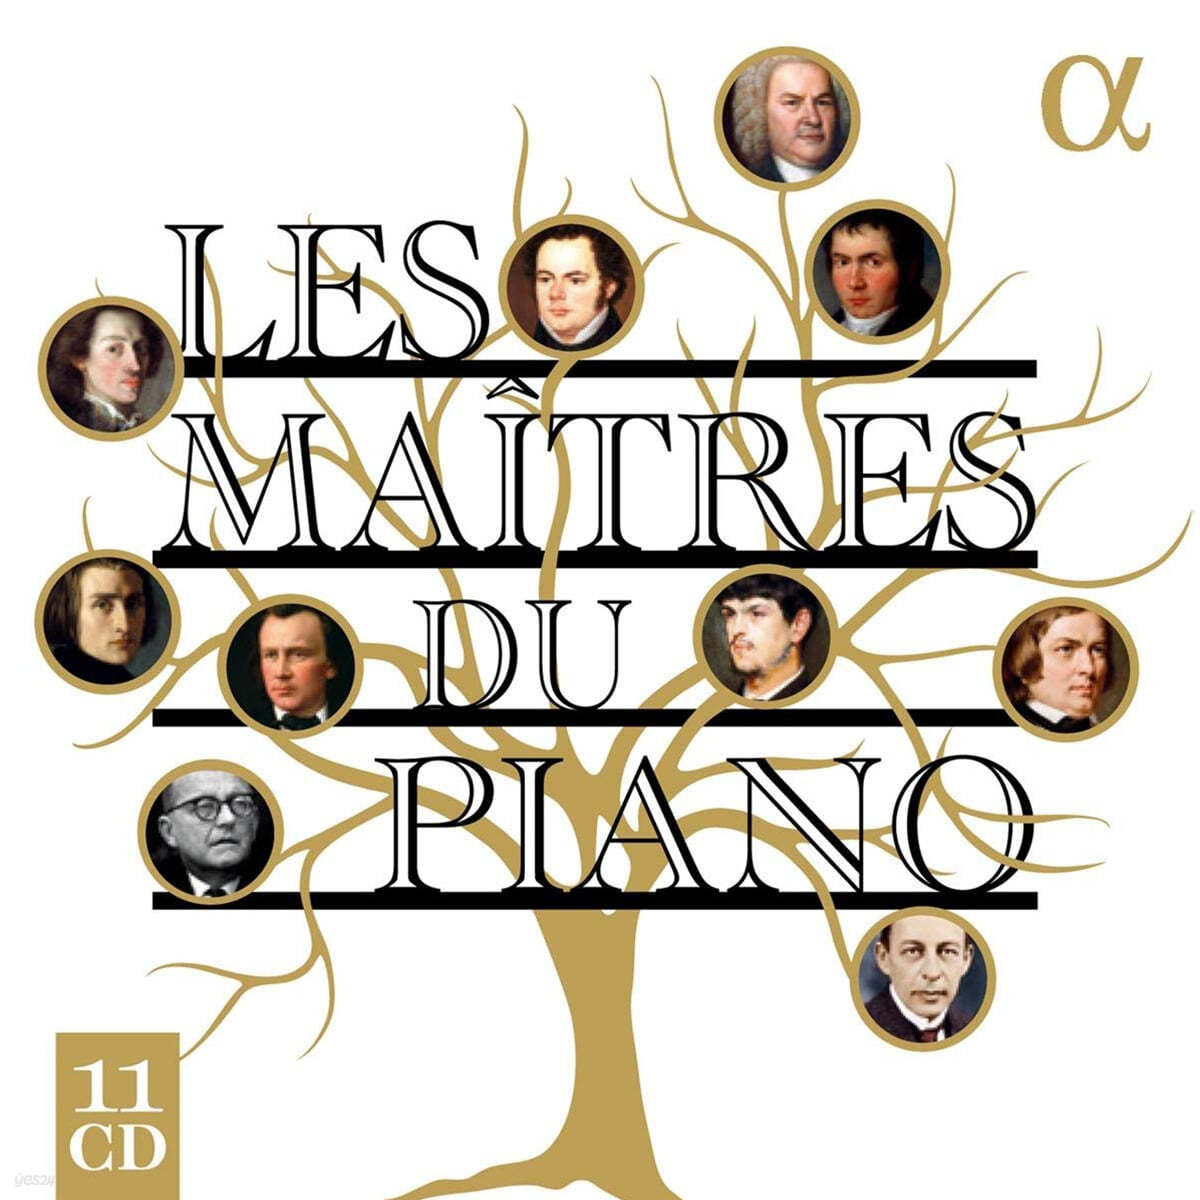 알파 레이블 피아노 명반 모음집 (Les Maitres du Piano)